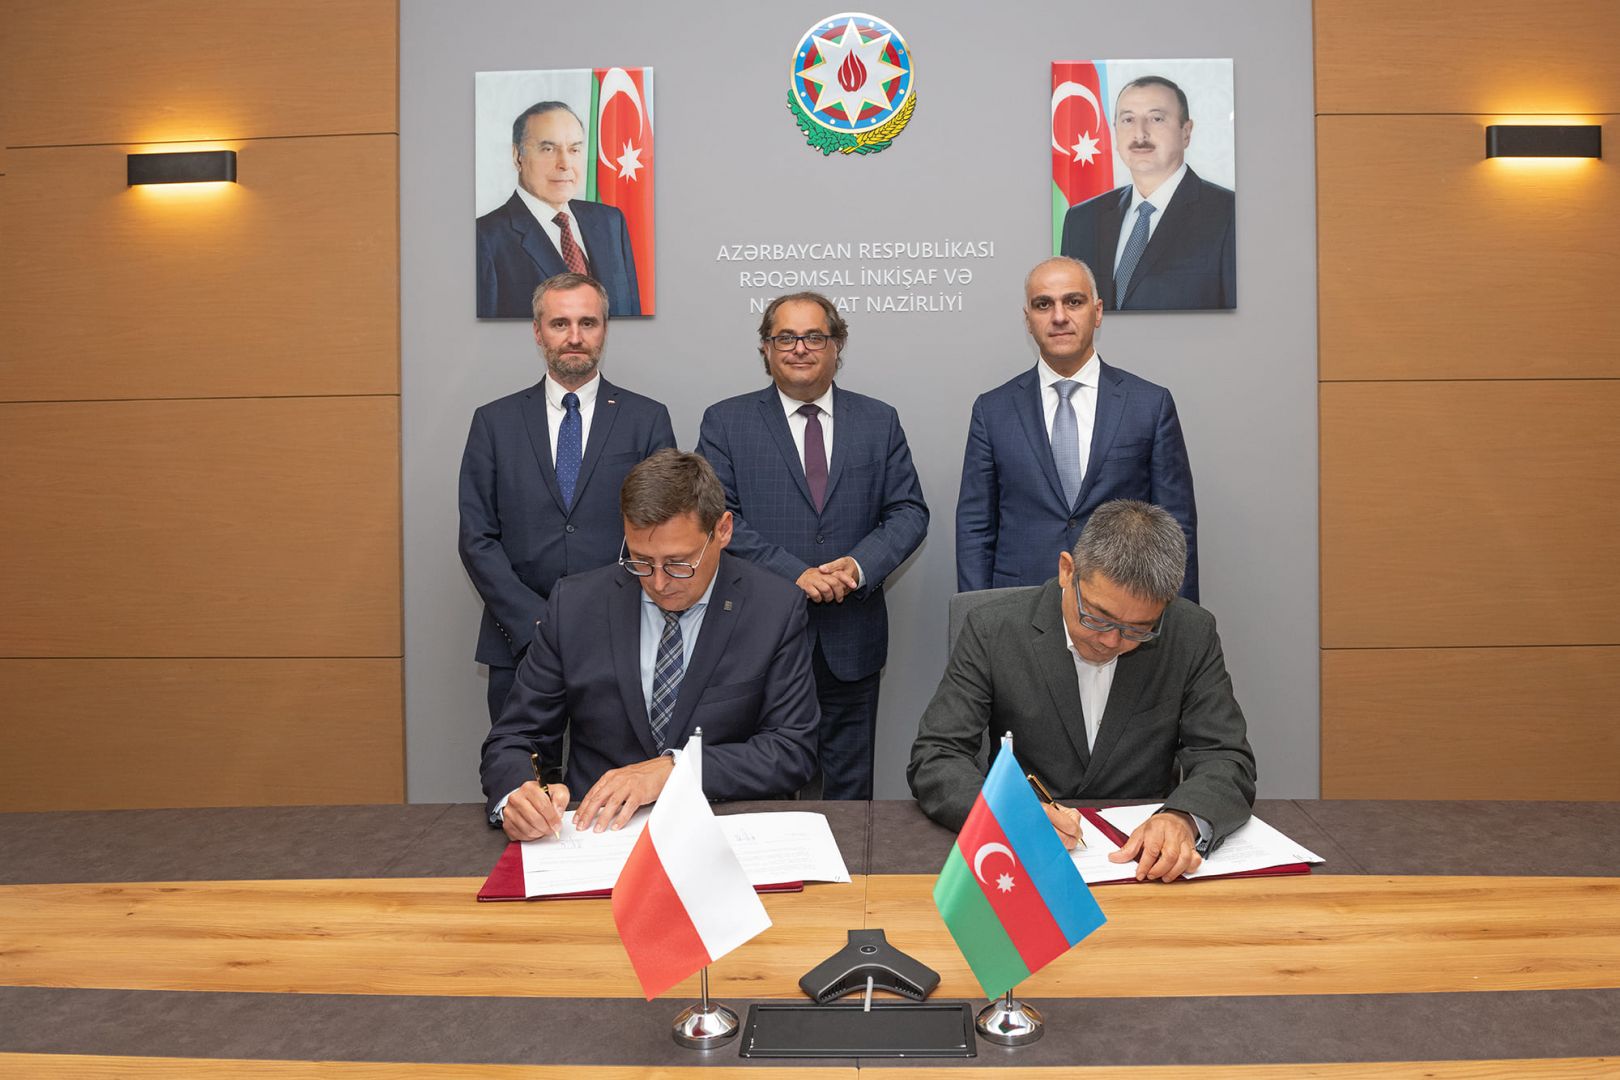 Baku, Gdansk ports ink letter of intent on cooperation [PHOTO]